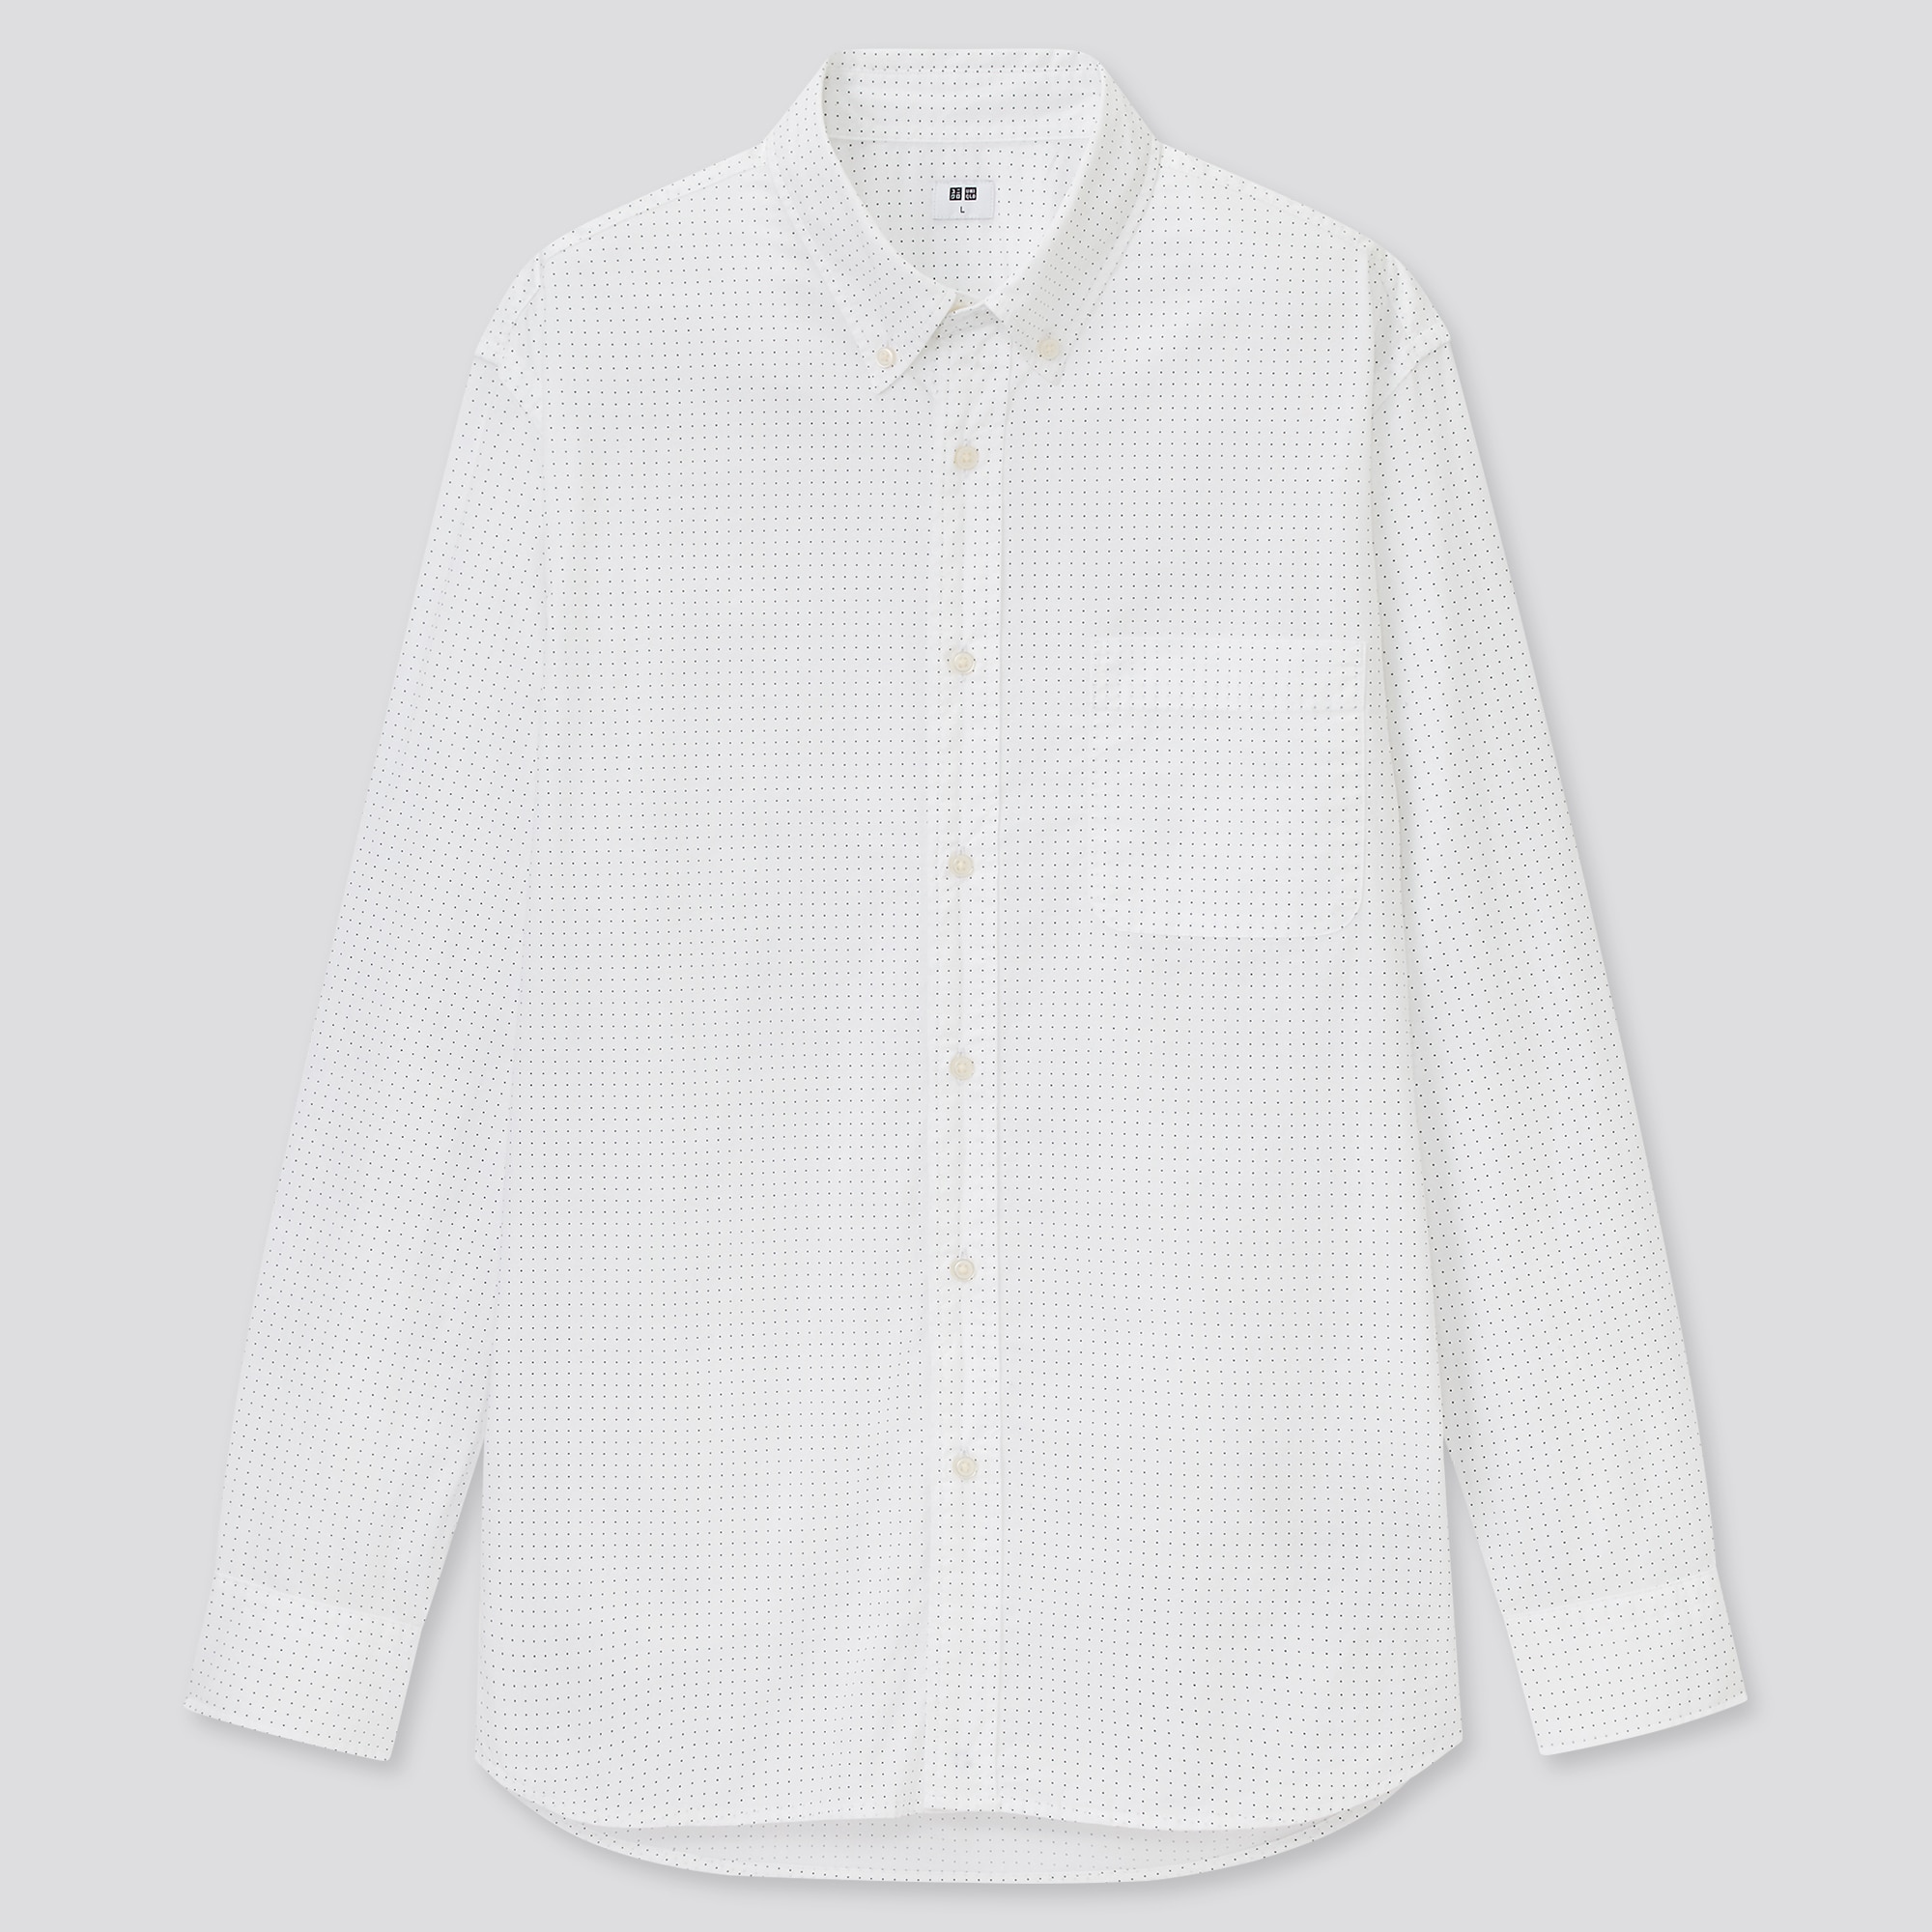 白シャツの関連商品 ユニクロ